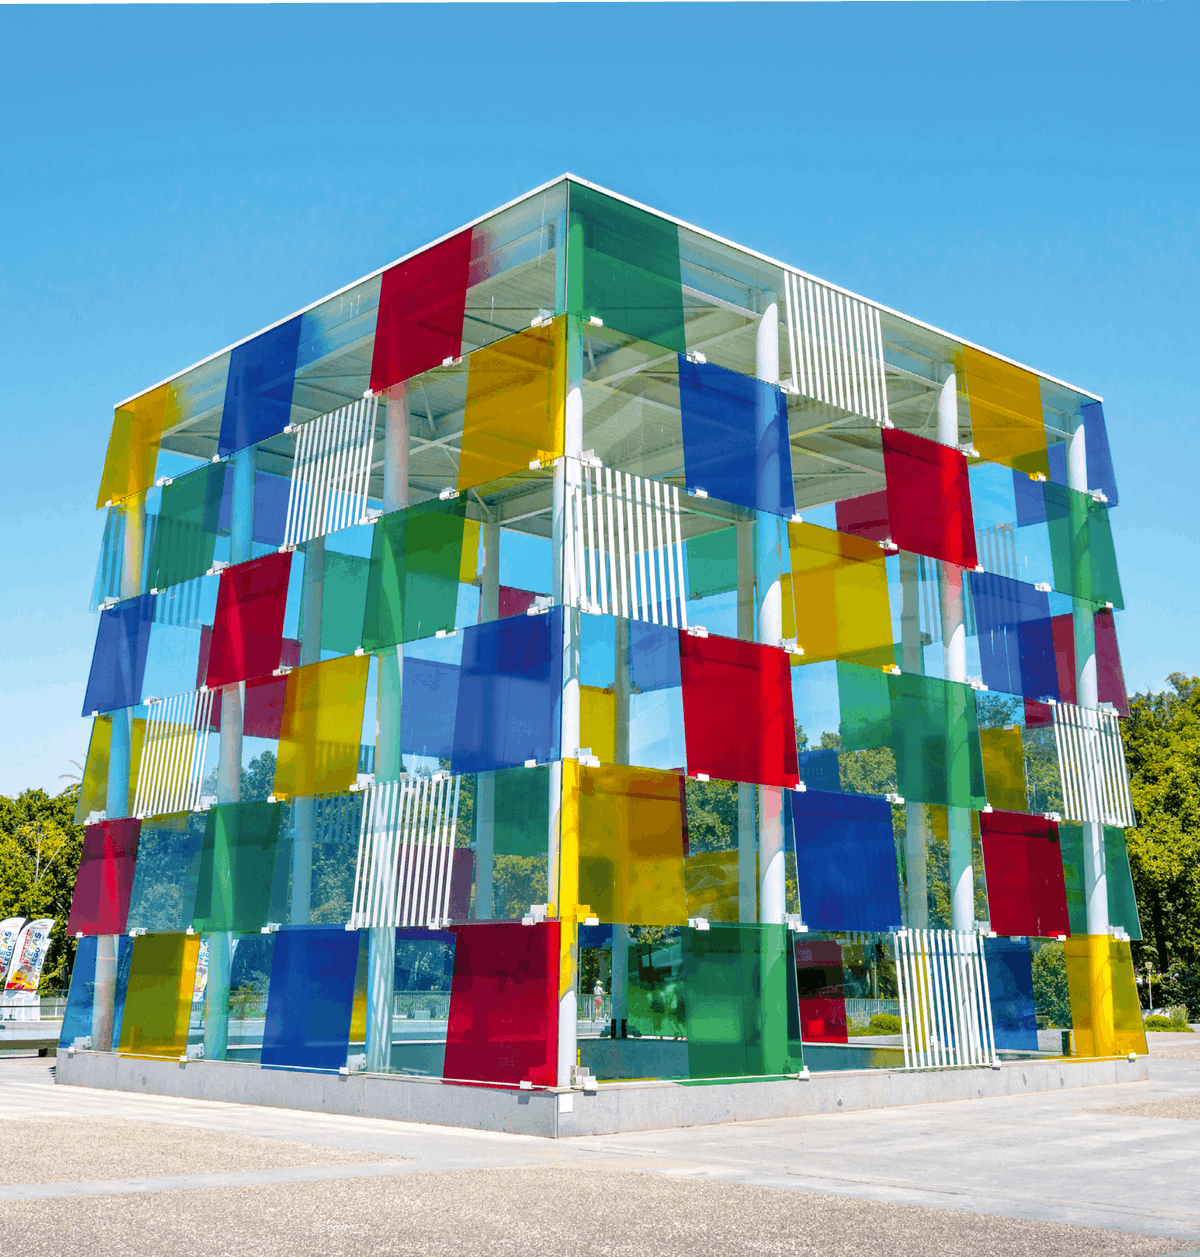 Ce bâtiment multicolore en forme de cube se situe
au Centre Pompidou de Málaga en Espagne, un
musée d'art moderne et contemporain. On peut
retrouver dans un cube de nombreuses situations
d'orthogonalité entre des plans et des droites.